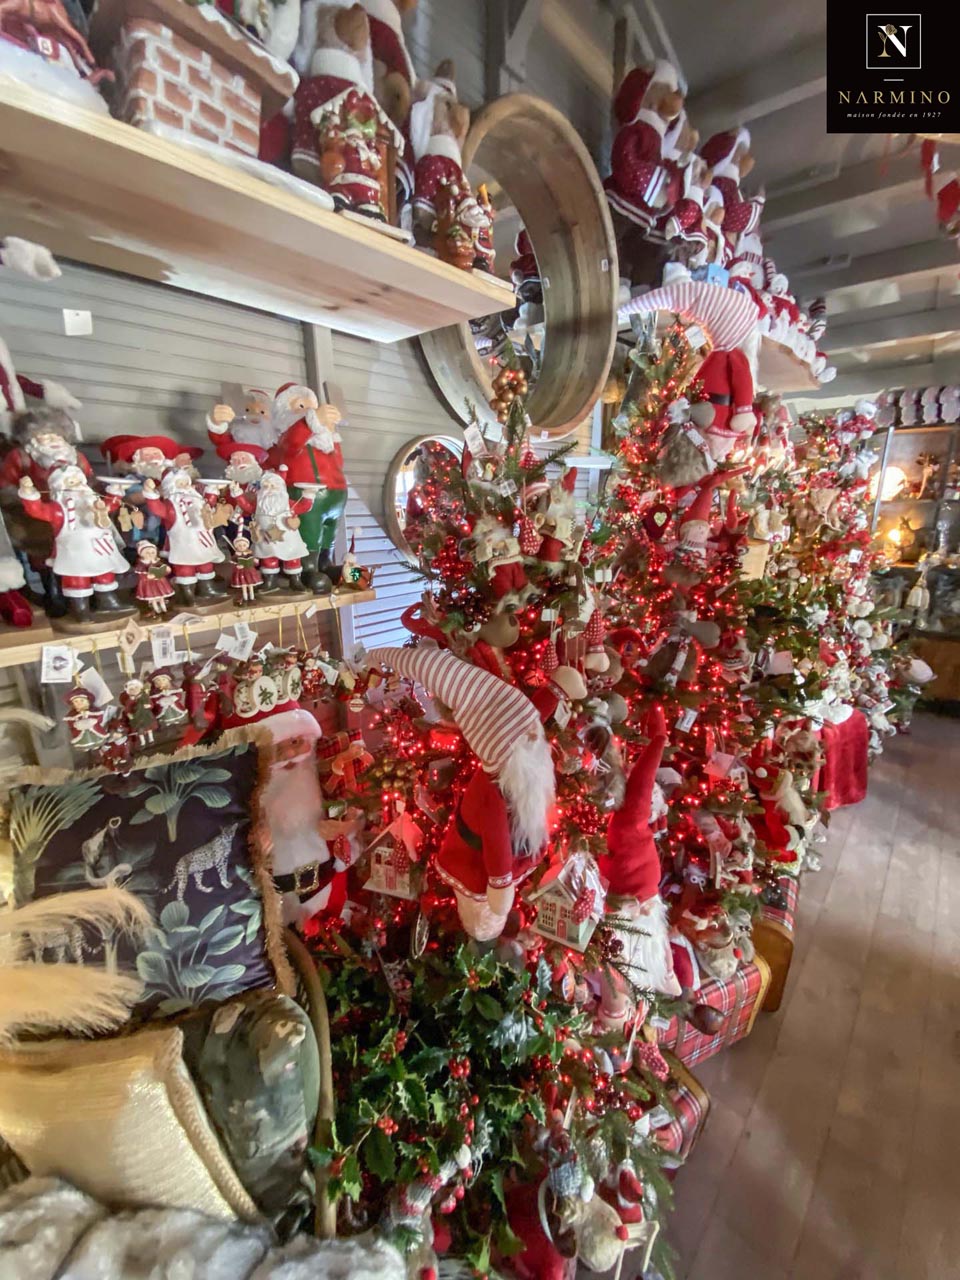 Le fleuriste Narmino à Monaco vous propose ses décorations de Noël